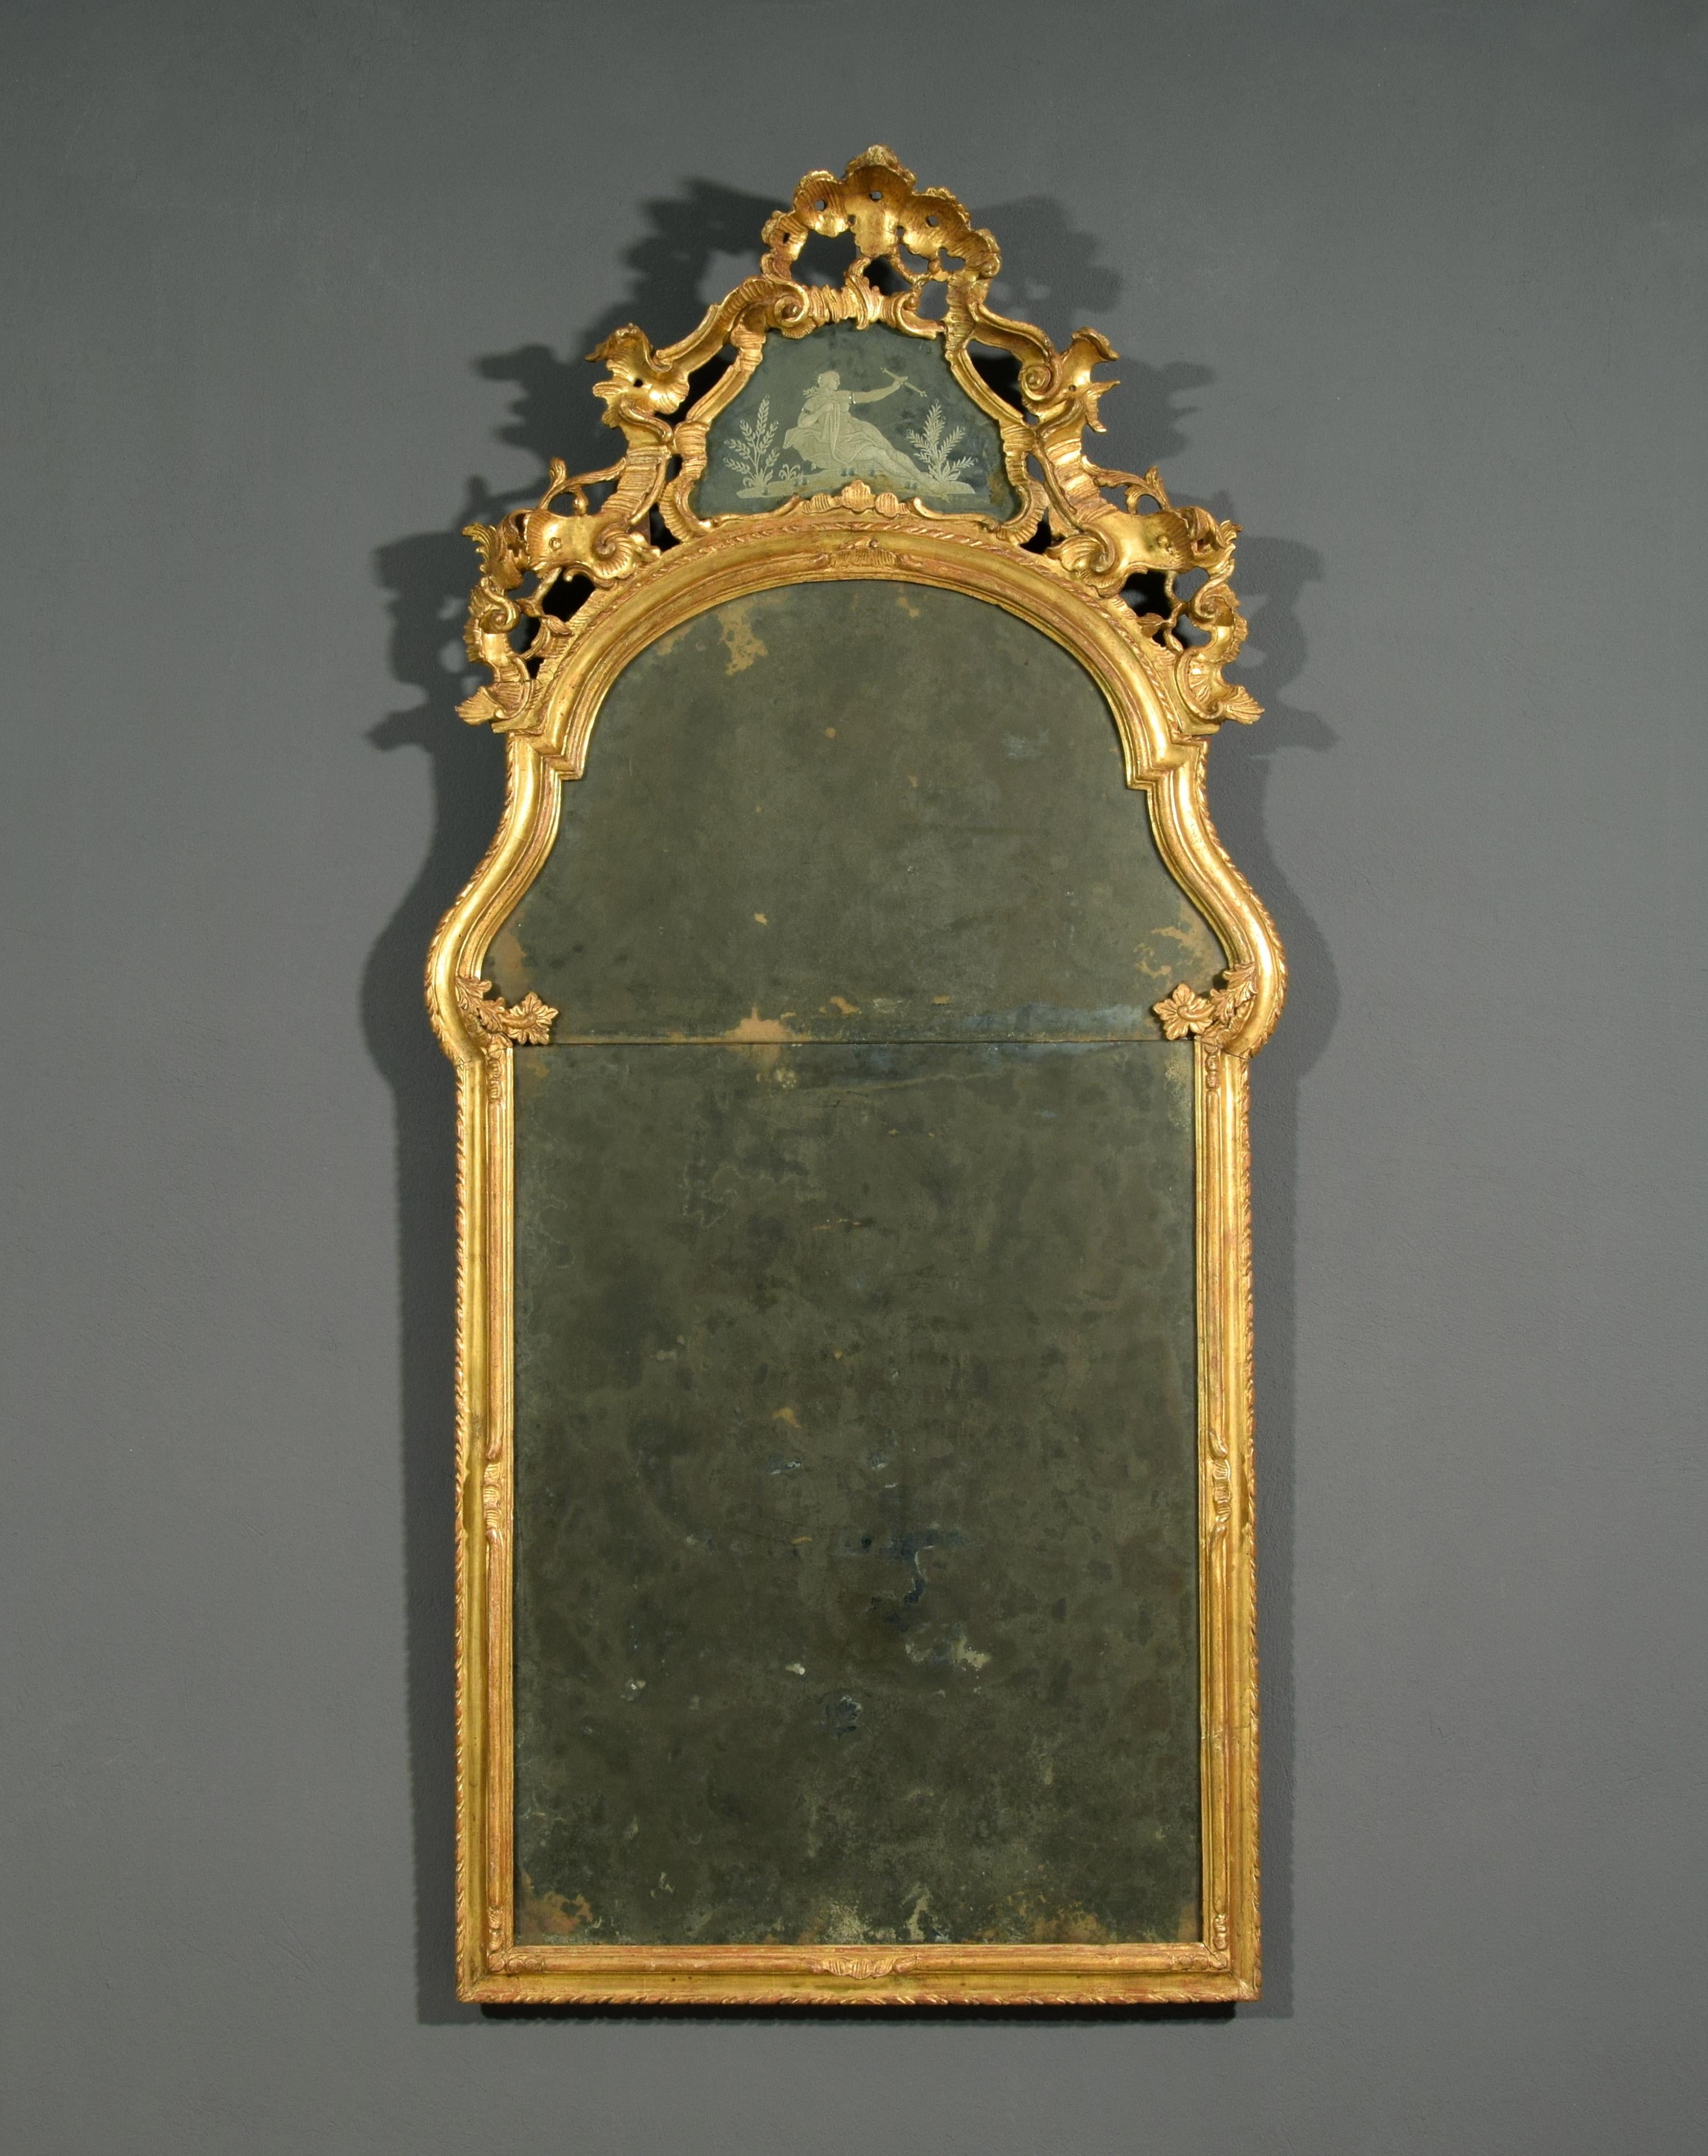 Miroir baroque italien du XVIIIe siècle en bois sculpté et doré 

Ce miroir raffiné a été fabriqué à Venise, en Italie, au XVIIIe siècle, et présente la décoration caractéristique du baroque vénitien.
Le miroir, en bois sculpté et doré, a une